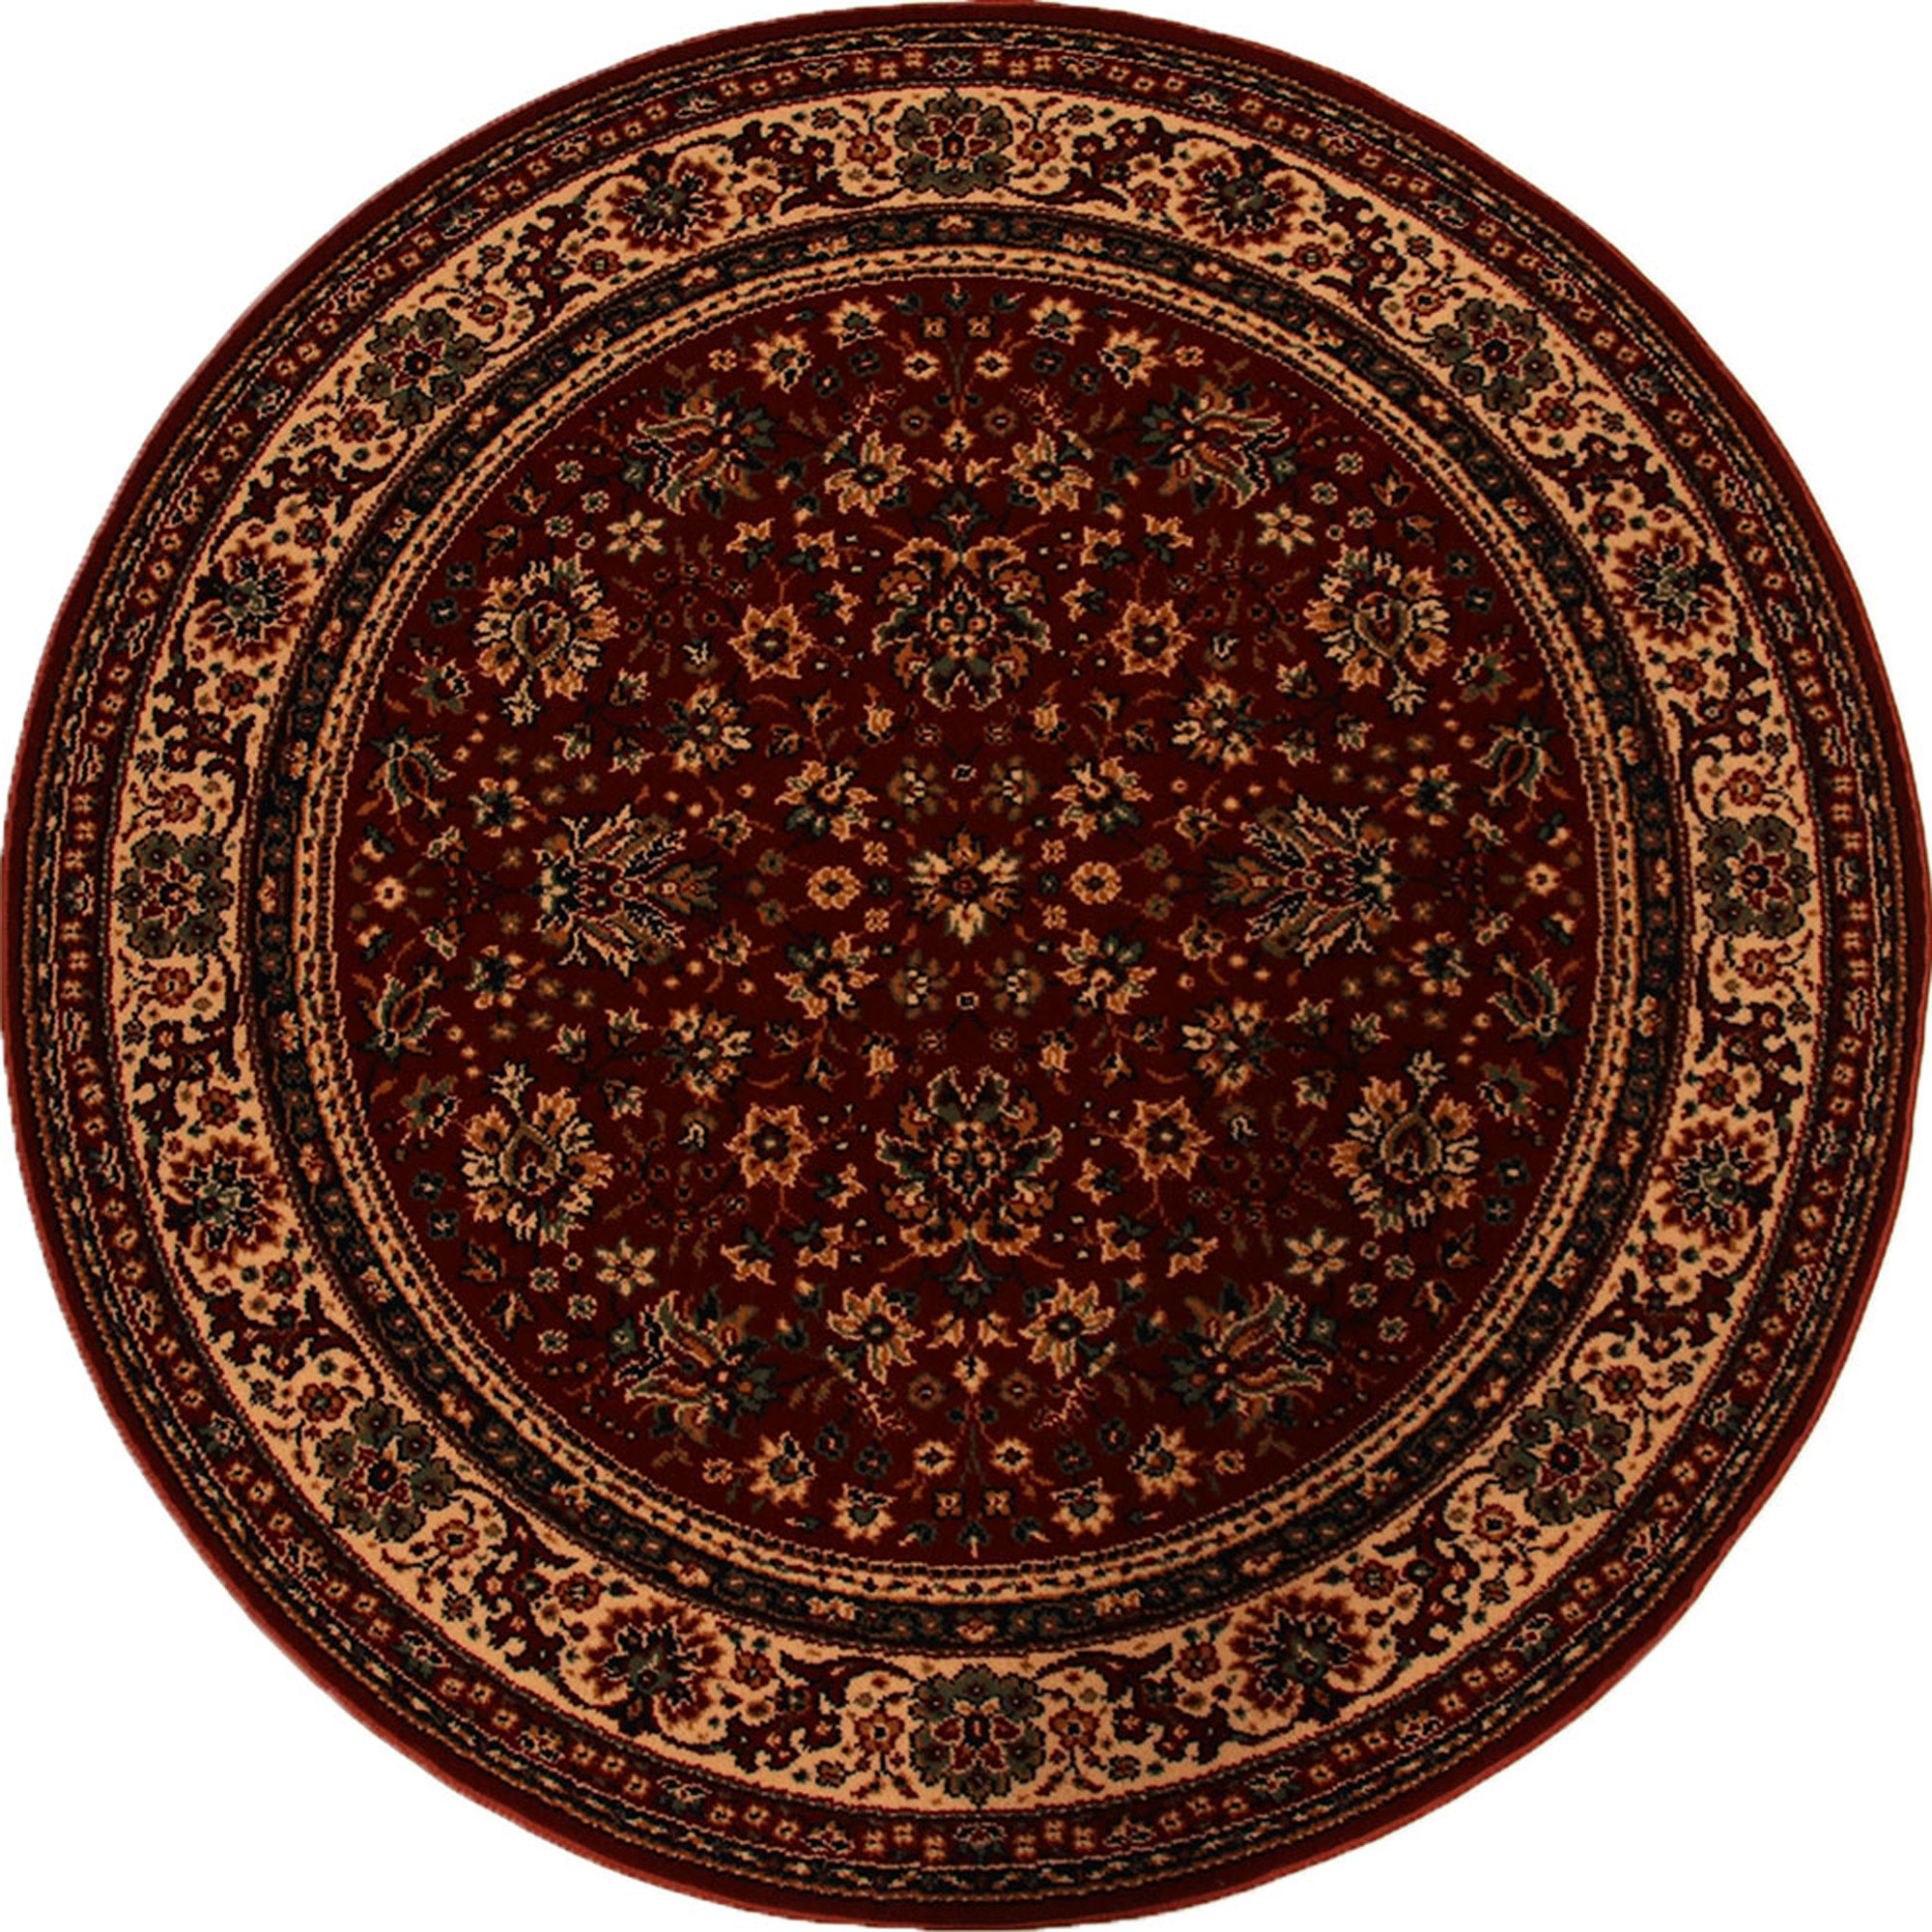 Teppich Lano Royal Klassisch Orientalisch braun/geige 120cm rund